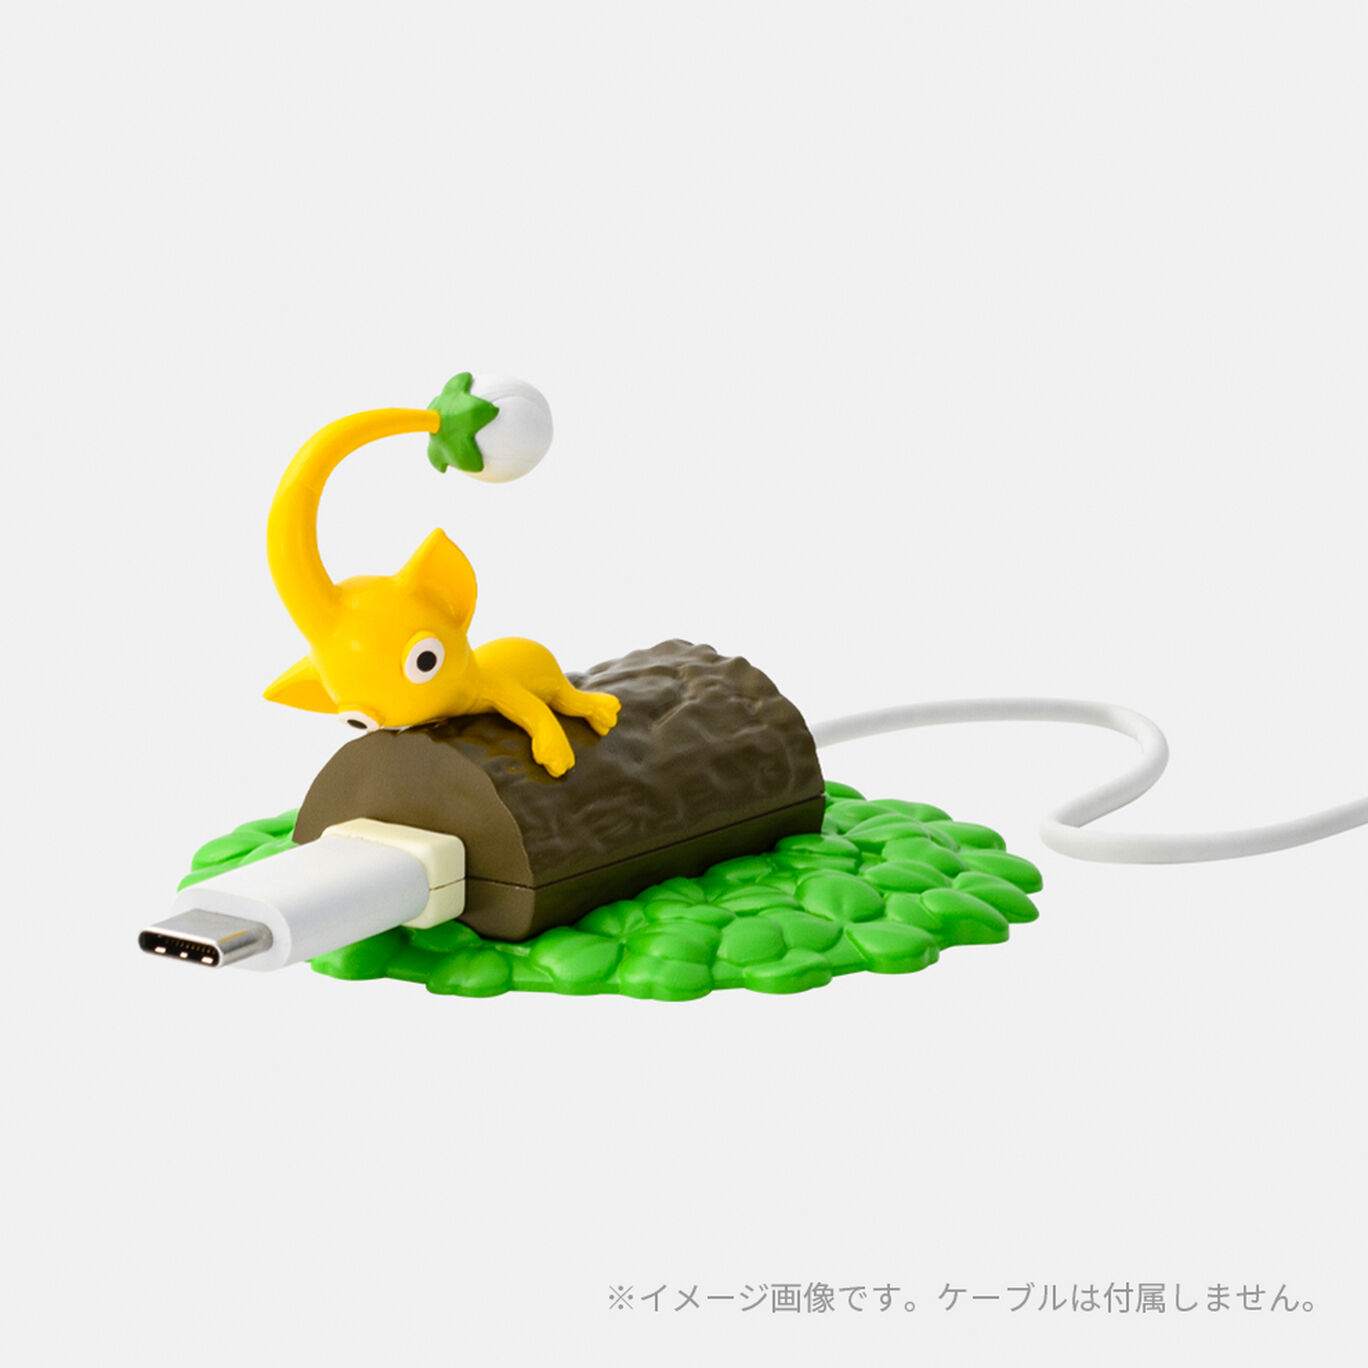 【単品】はたらくピクミンコレクション PIKMIN【Nintendo TOKYO取り扱い商品】